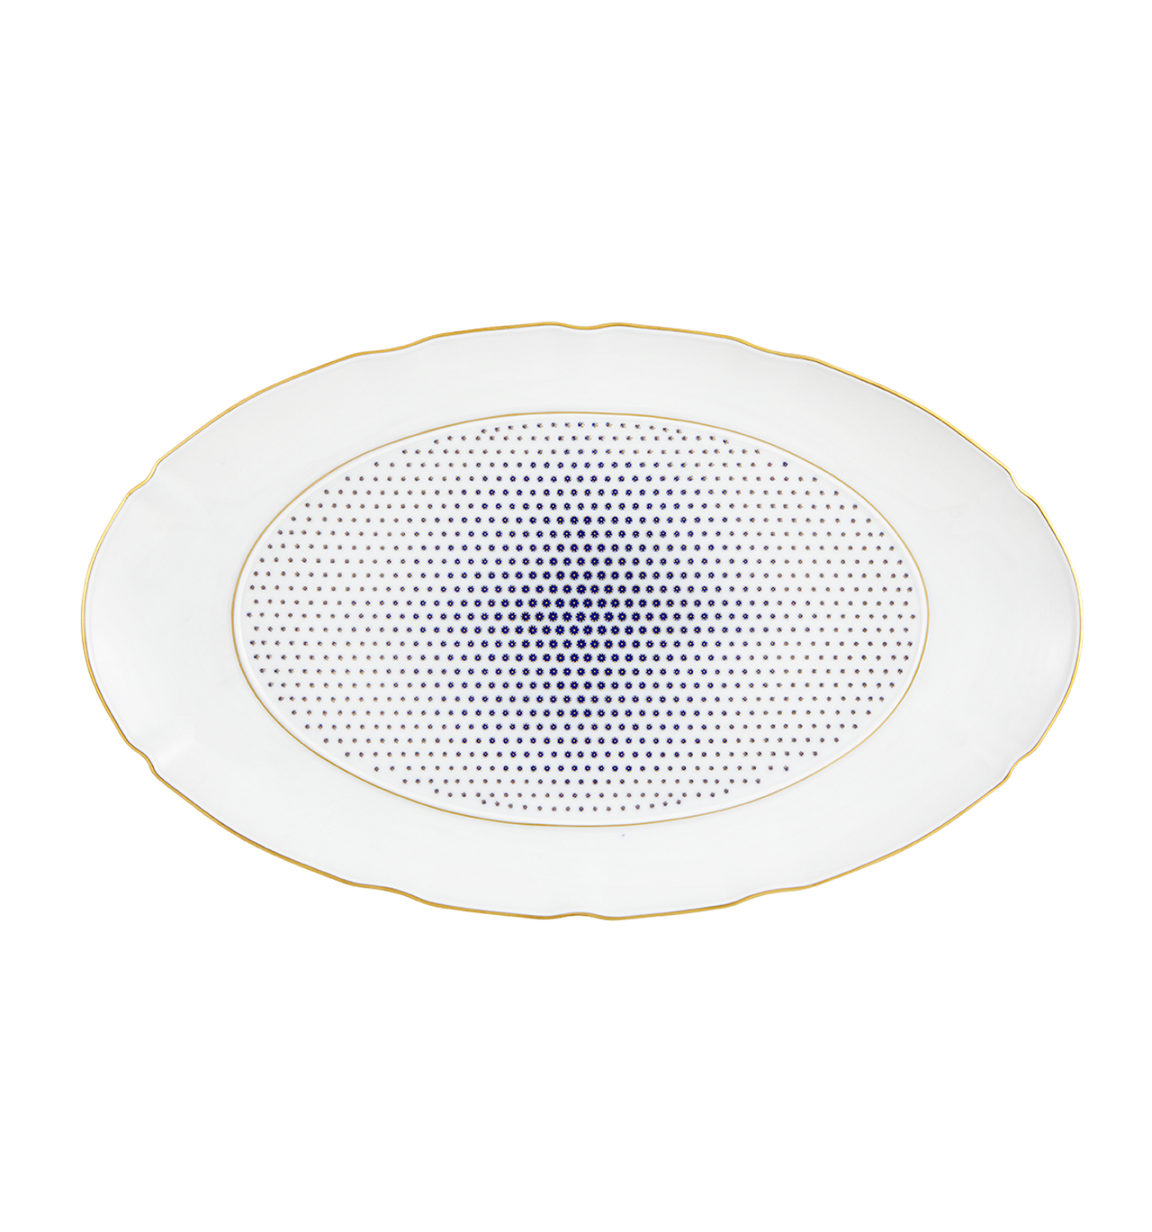 Large Oval Platter Vista Alegre Constellation D'or